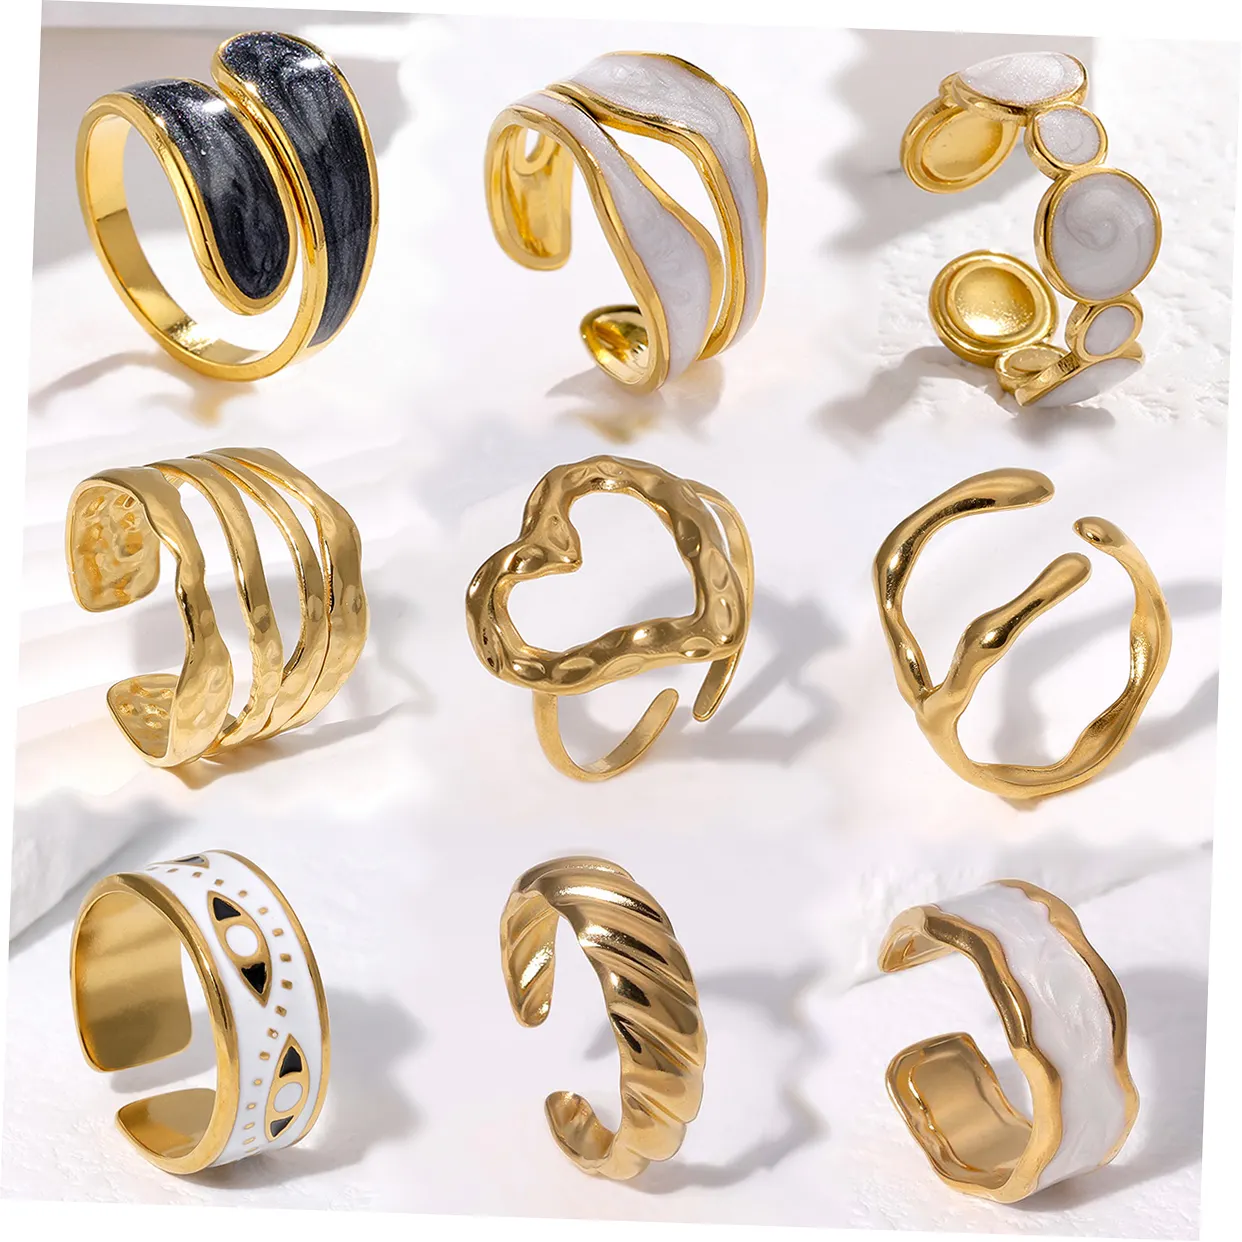 خواتم عصرية تصاميم متعددة من الفولاذ المقاوم للصدأ 18k خاتم مفتوح للإصبع غير منتظم الذهب للنساء مجوهرات الخواتم